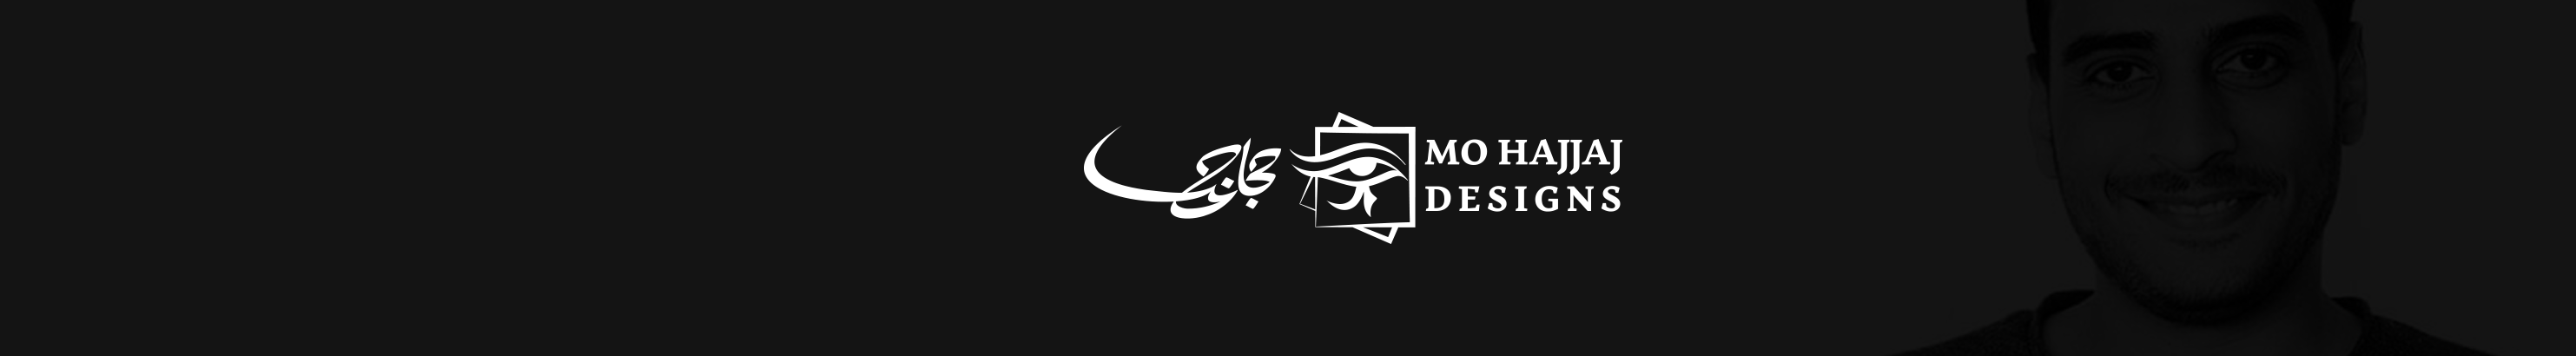 Mohamed Hajjaj's profile banner